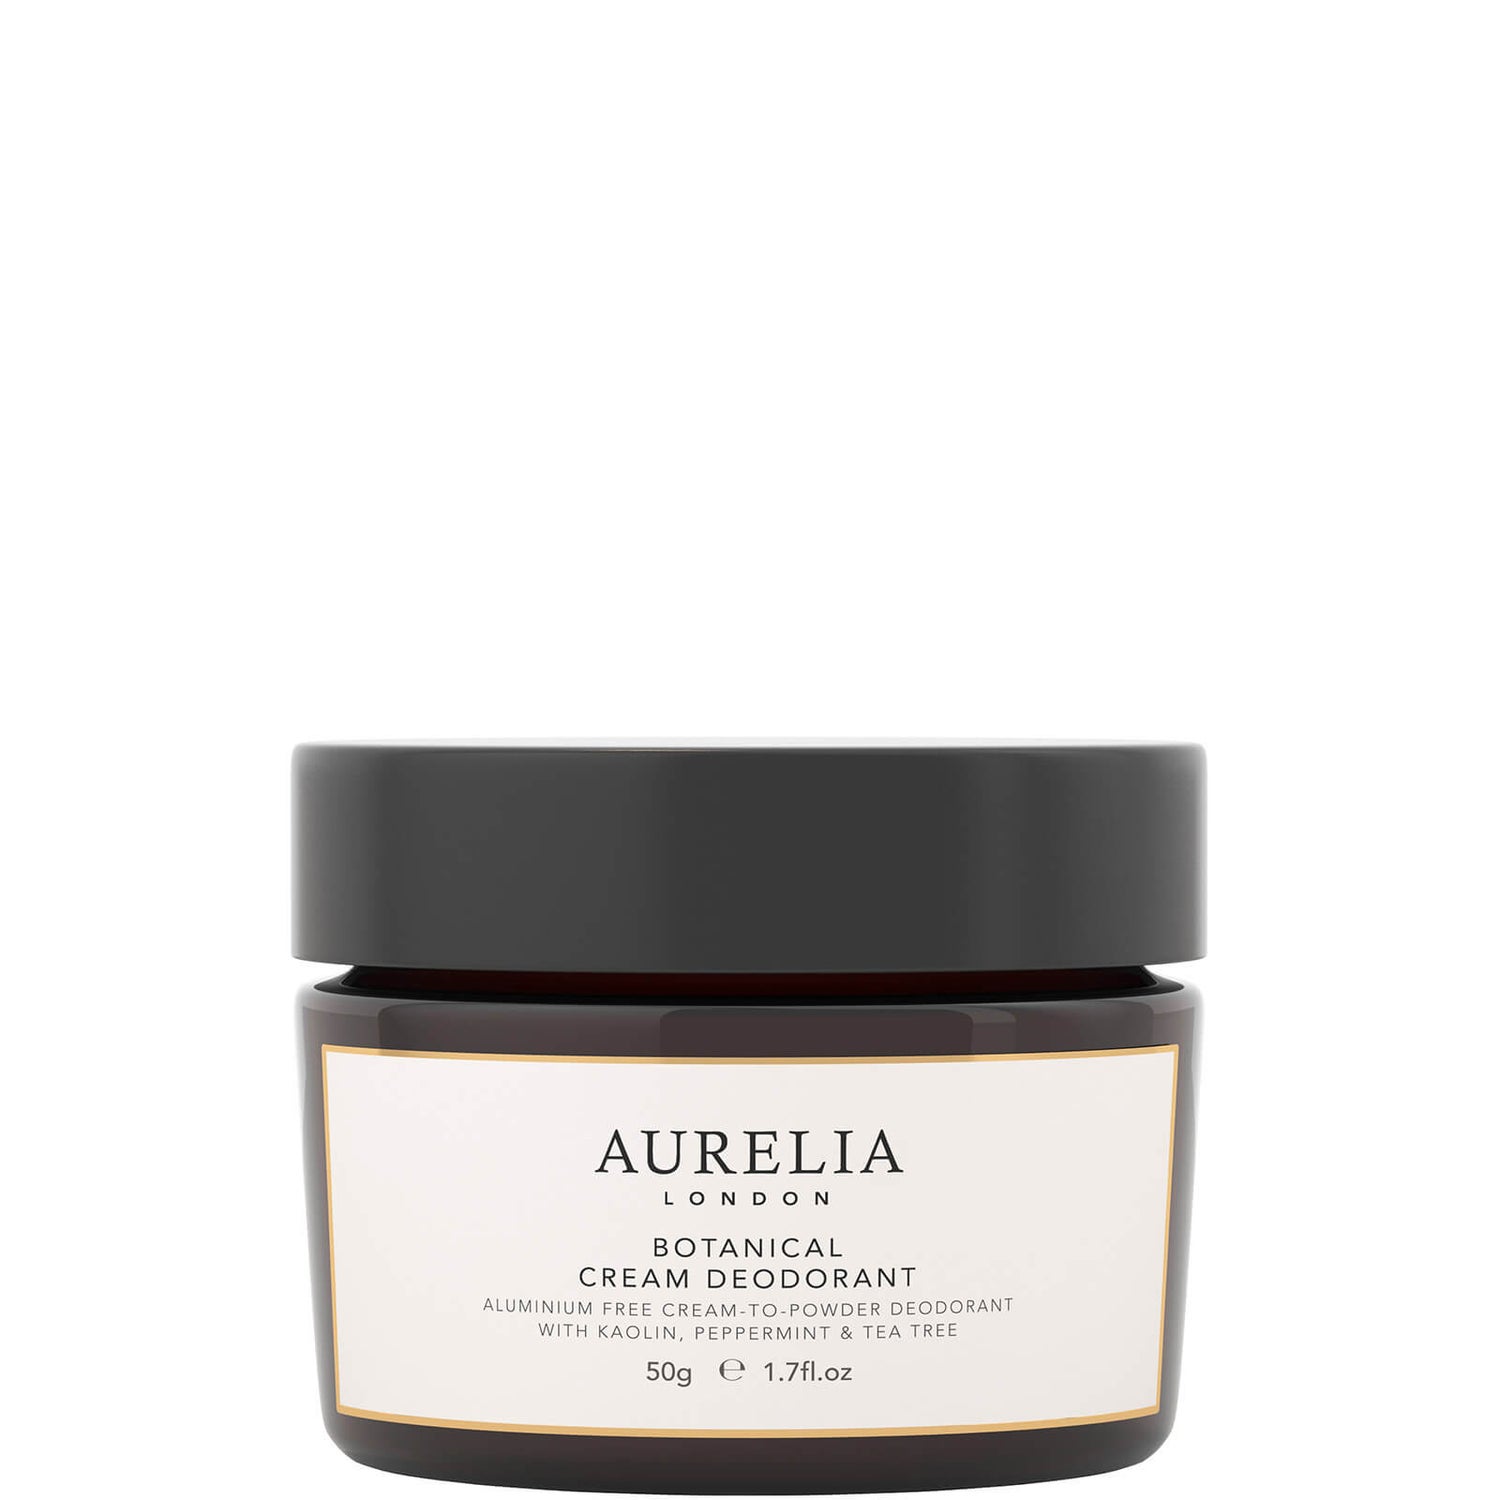 Aurelia London Botanical Cream Deodorant 50g